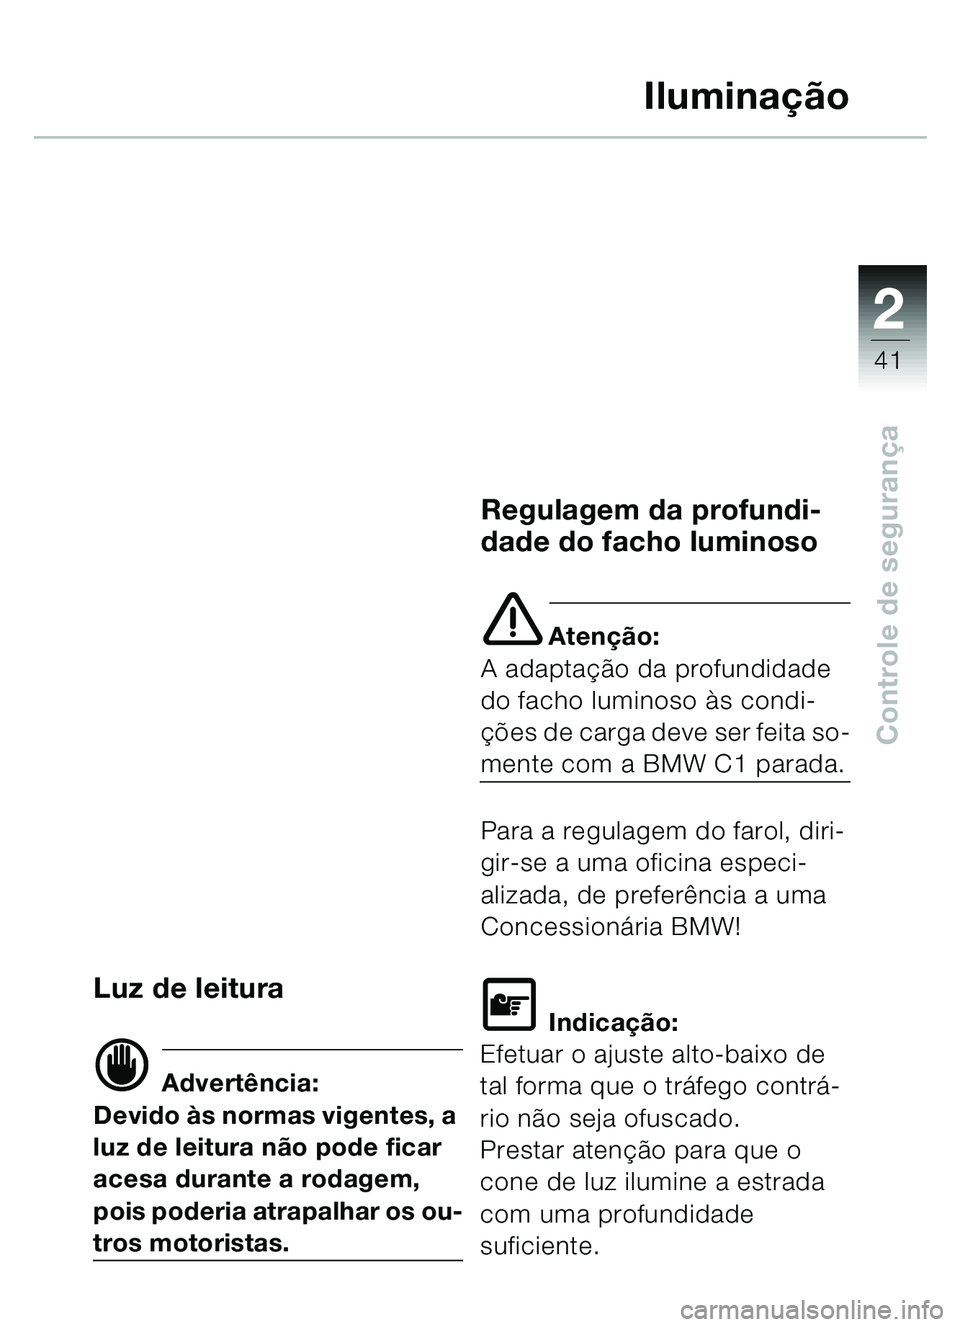 BMW MOTORRAD C1 2000  Manual do condutor (in Portuguese) 2
41
Controle de segurança
Iluminação
Luz de leitura
d Advertência:
Devido às normas vigentes, a 
luz de leitura não pode ficar 
acesa durante a rodagem, 
pois poderia atrapalhar os ou-
tros mot